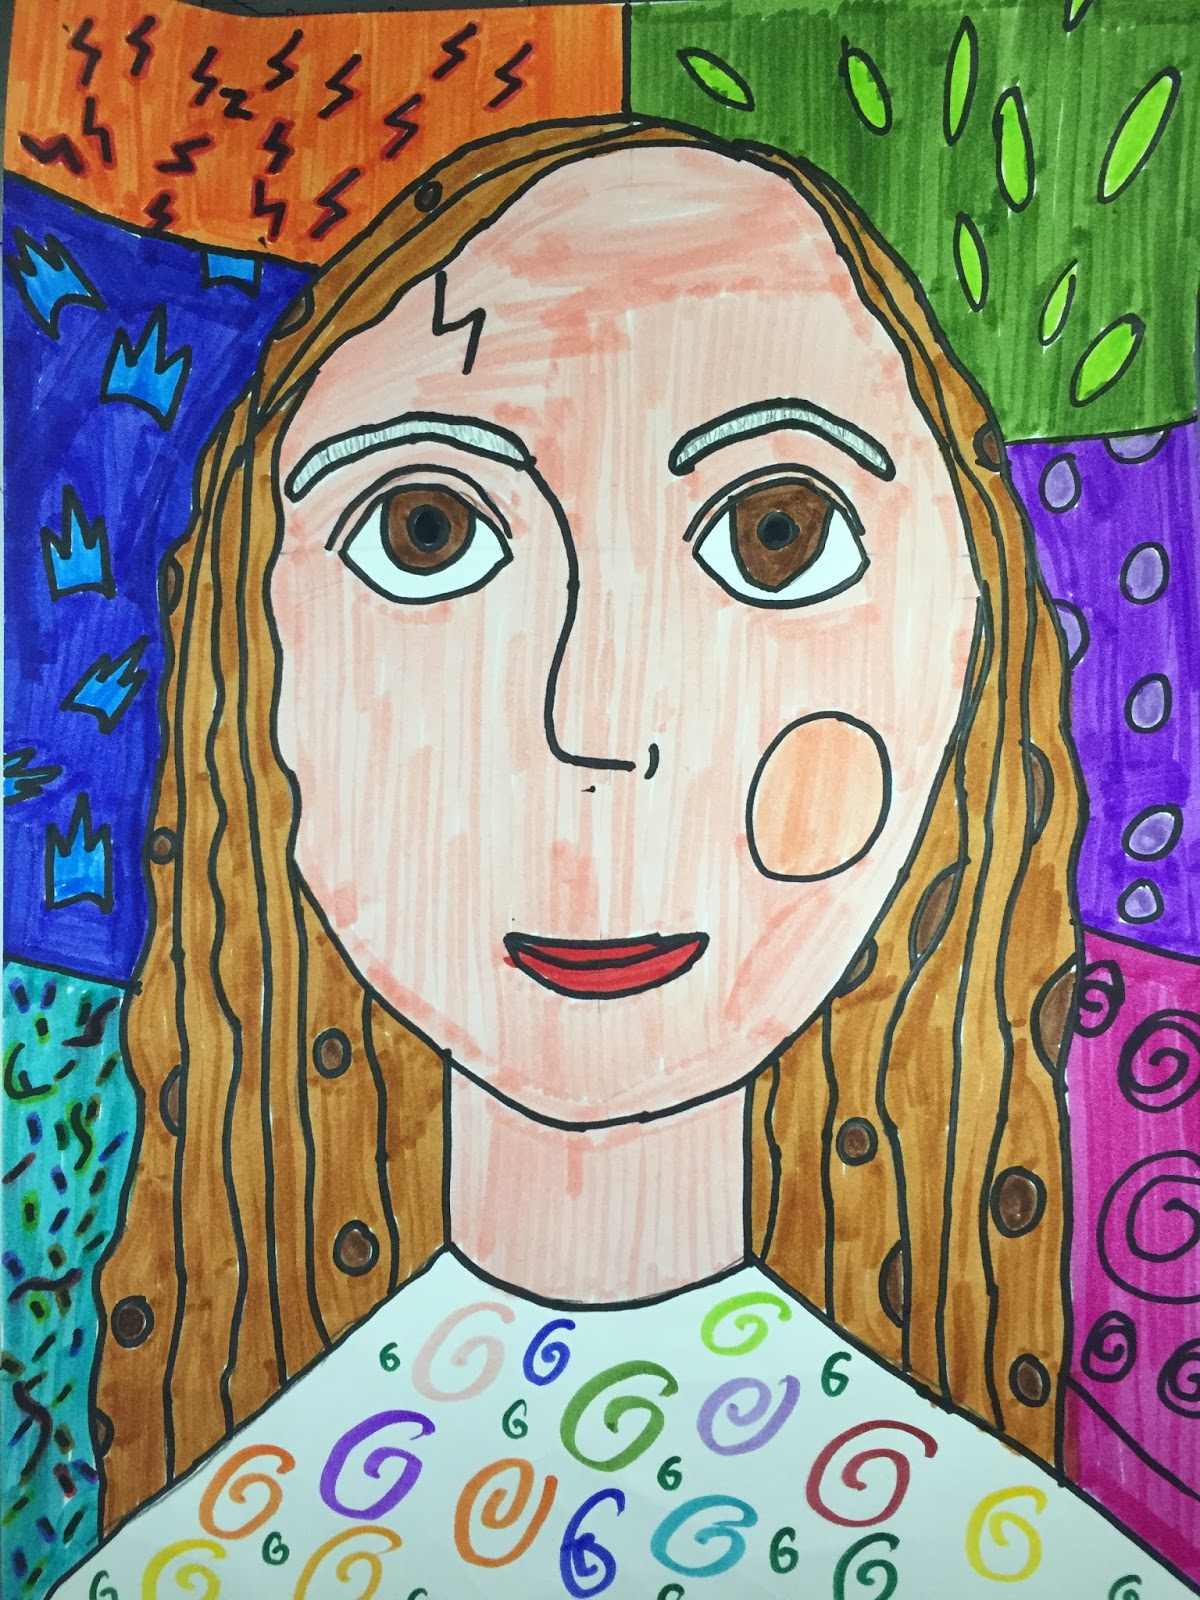 Elements of the Art Room: 4th & 5th Grade Romero Britto Self-Portraits